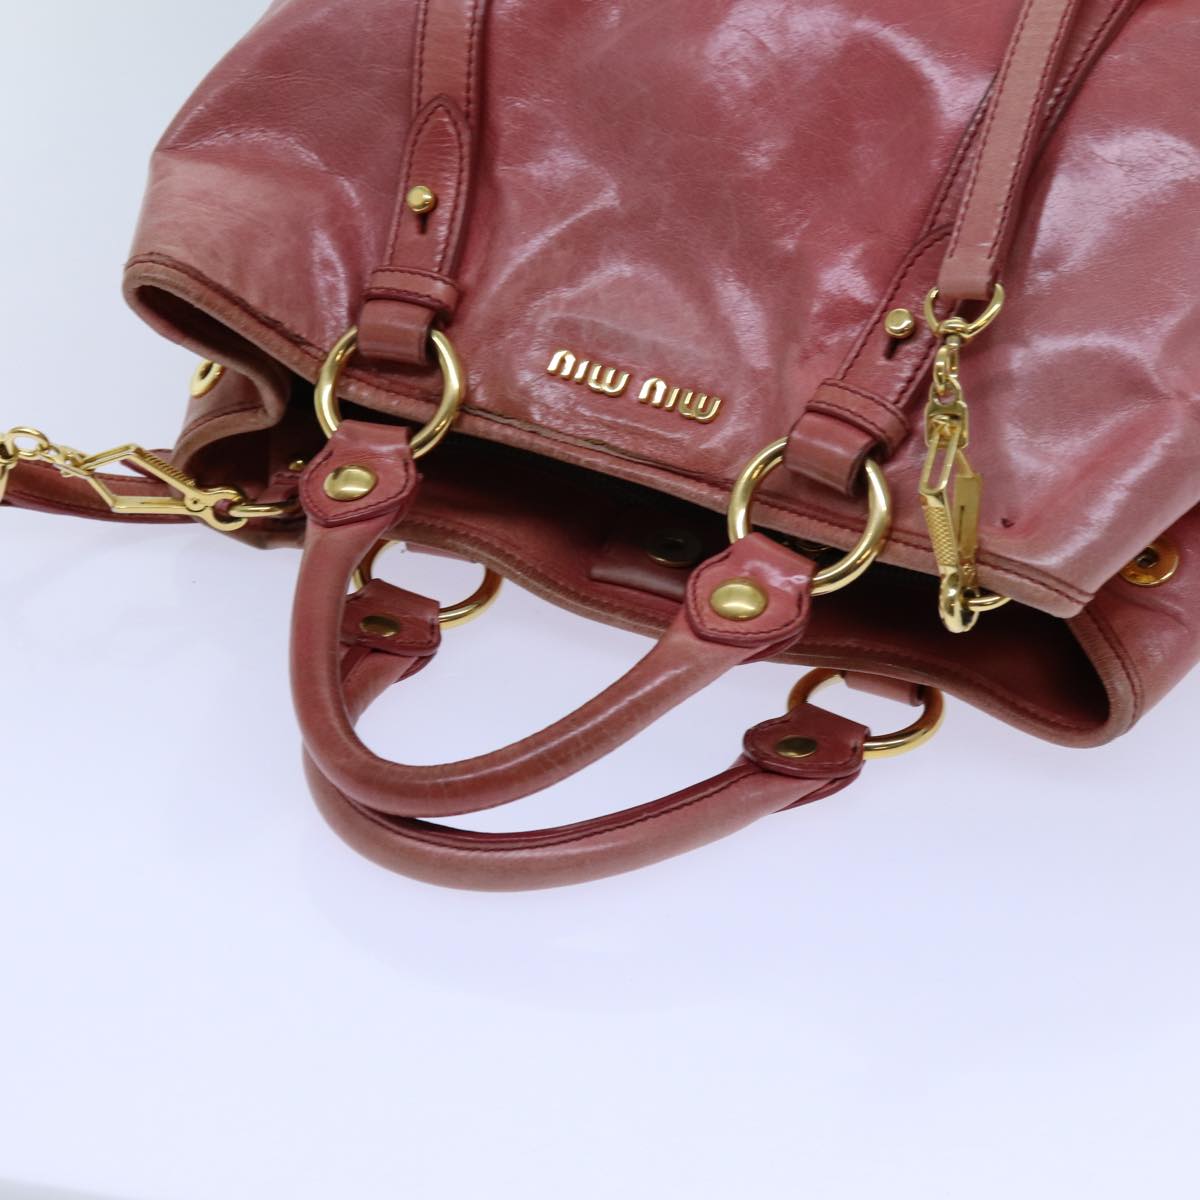 Miu Miu Hand Bag Leather 2way Pink Auth hk1215